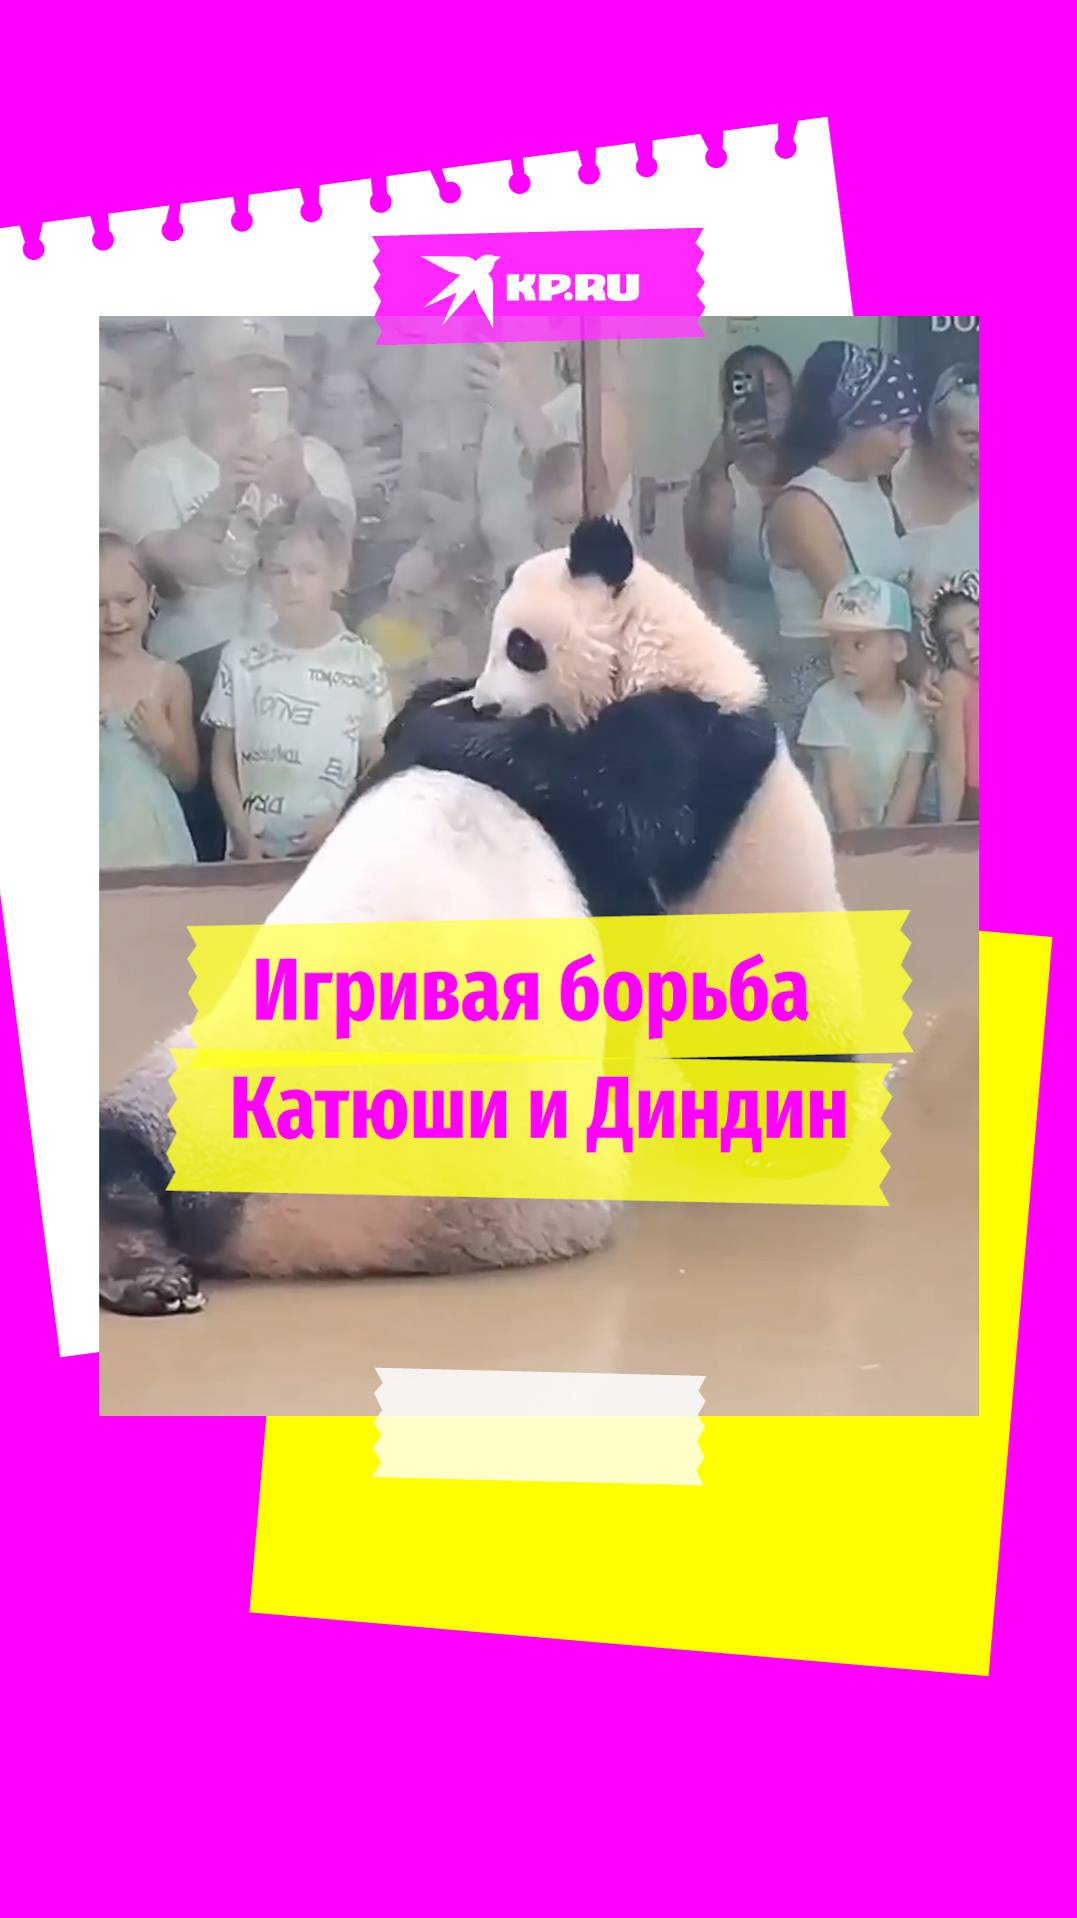 Диндин и Катюша игриво борются в вольере московского зоопарка